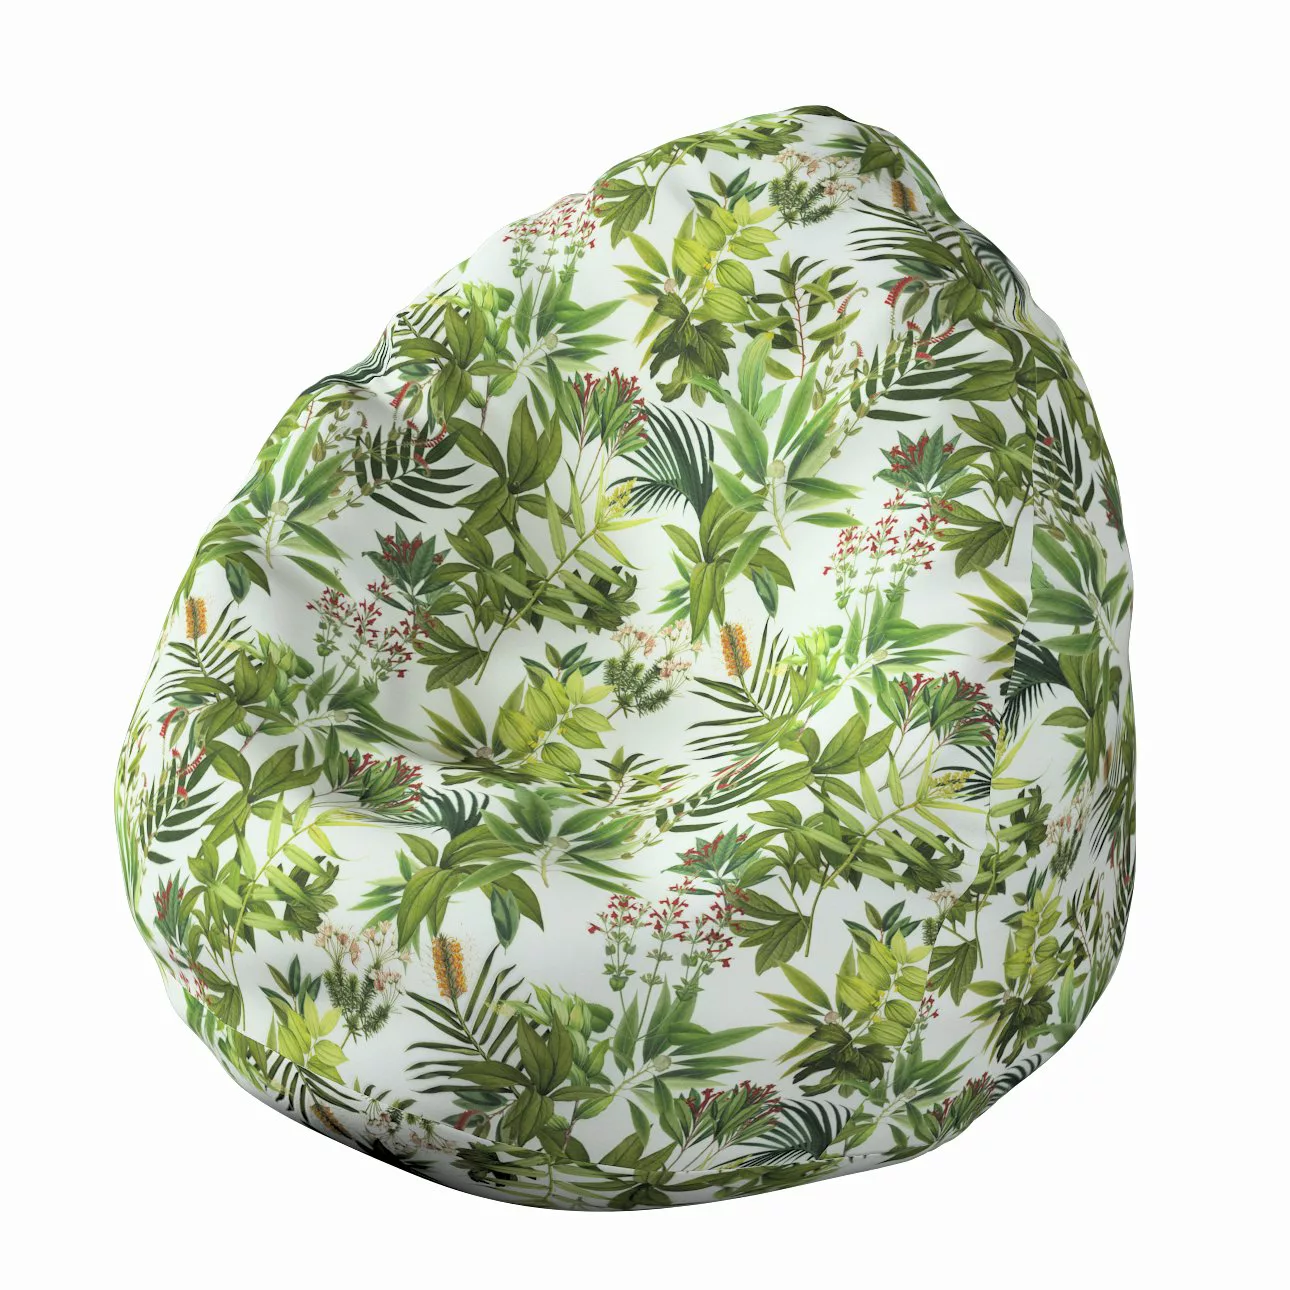 Bezug für Sitzsack, grün-weiß, Bezug für Sitzsack Ø60 x 105 cm, Tropical Is günstig online kaufen